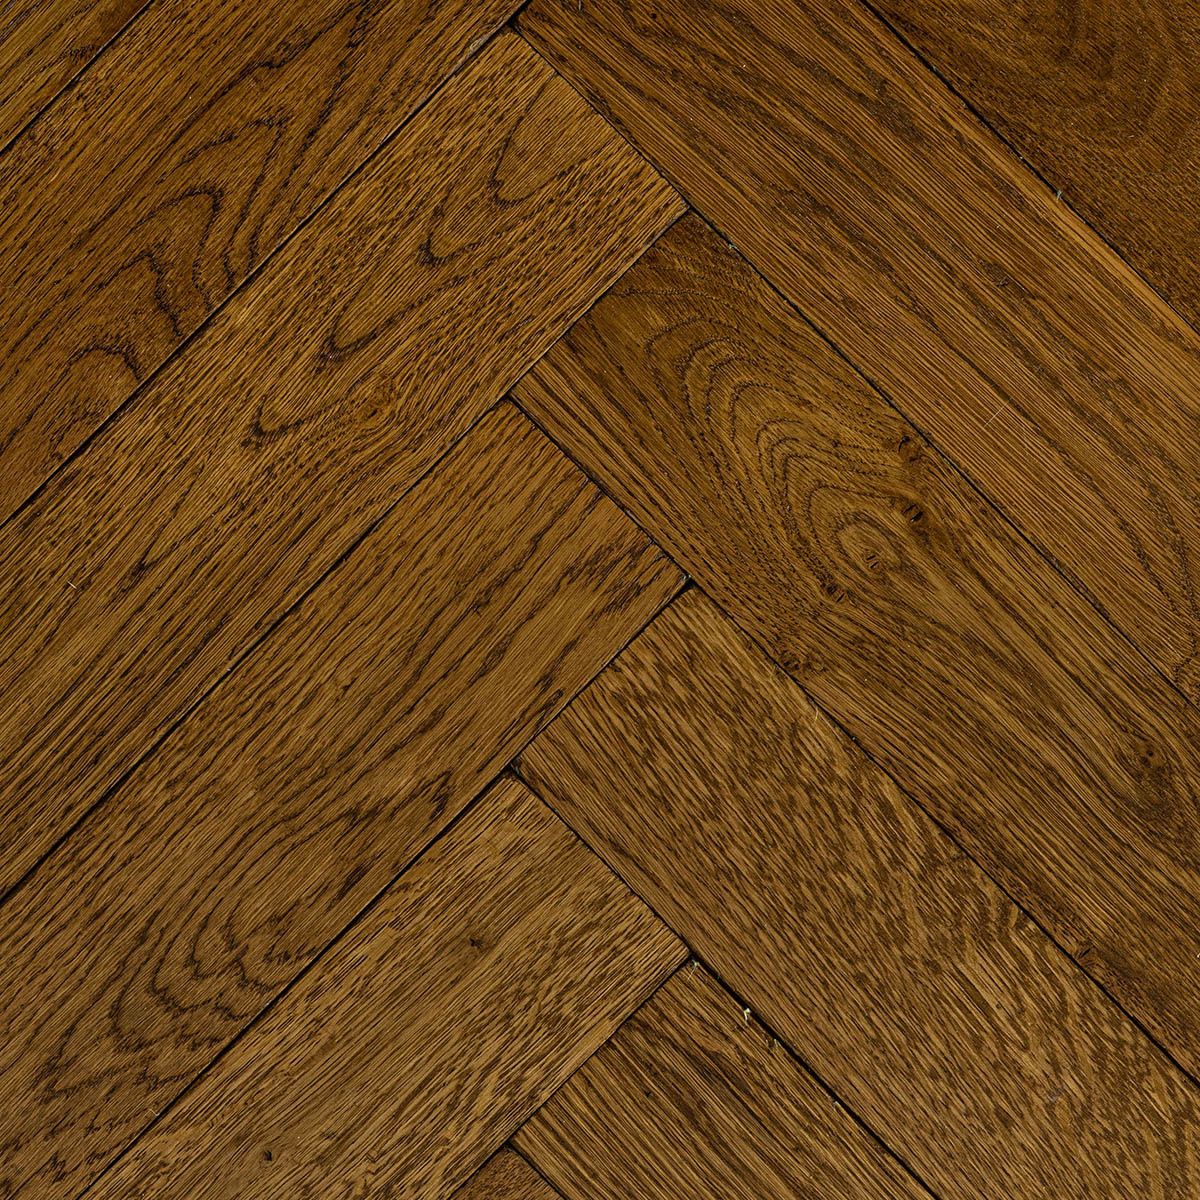 Windsor Close - Solid Oak Parquet Floor 300mm x 70mm